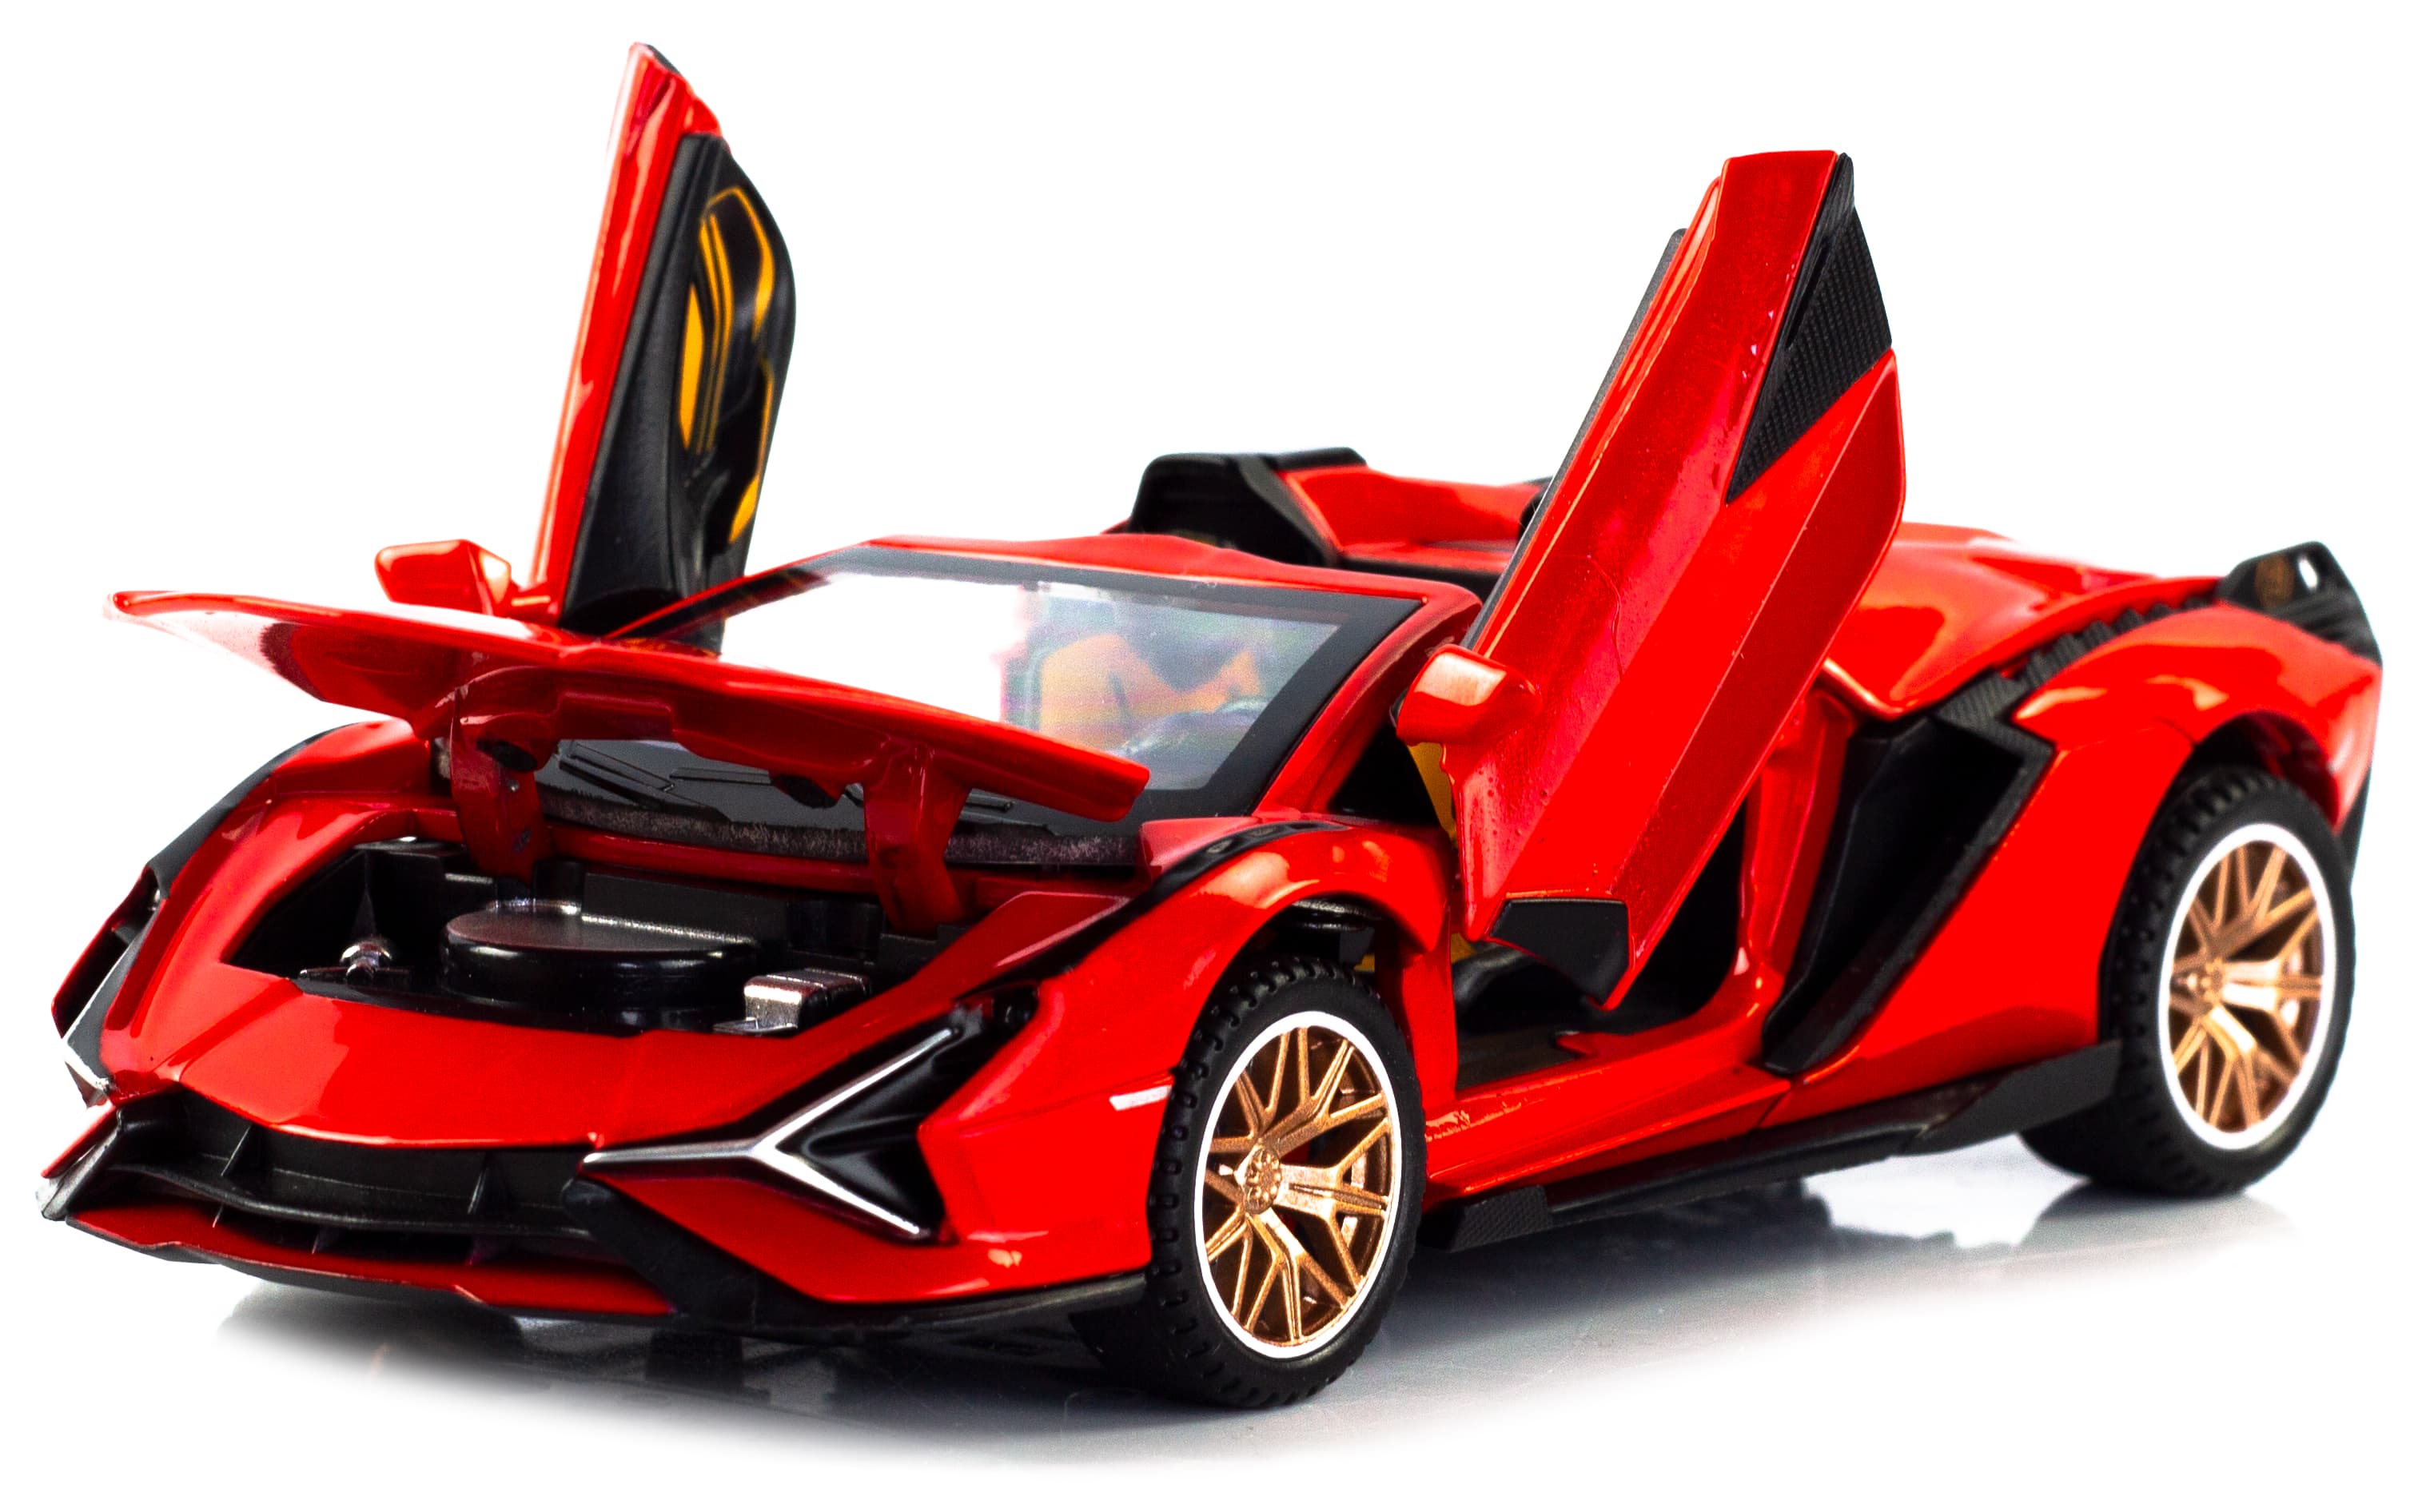 Металлическая машинка Double Horses 1:32 «Lamborghini Sian FKP 37 Roadster» 32661 свет и звук, инерционная / Красный